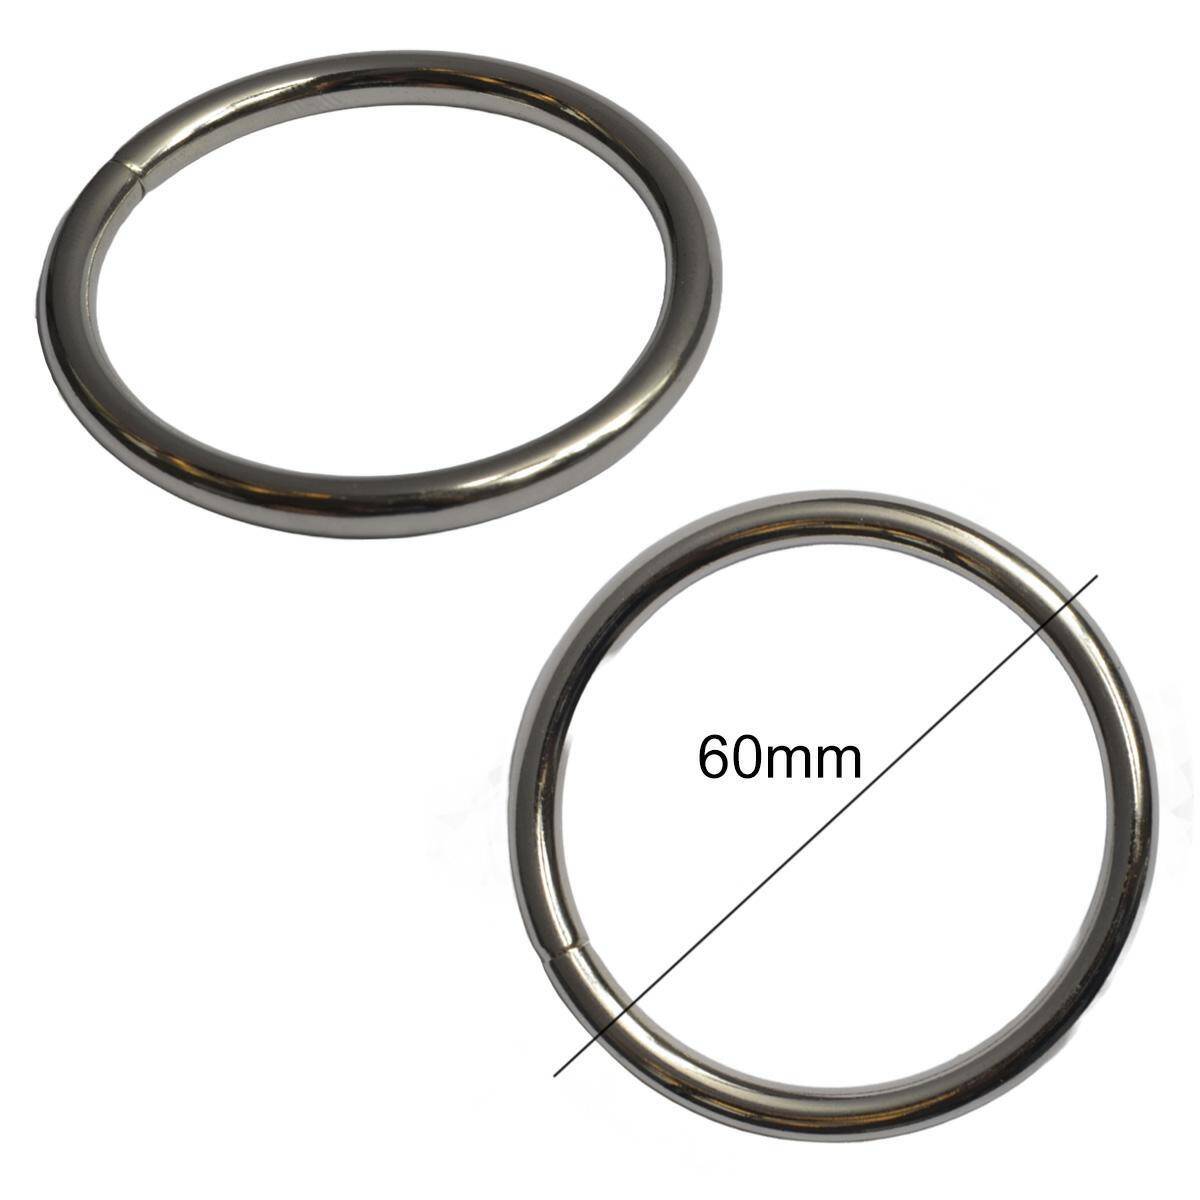 Key rings - steel - nickel - 60 mm